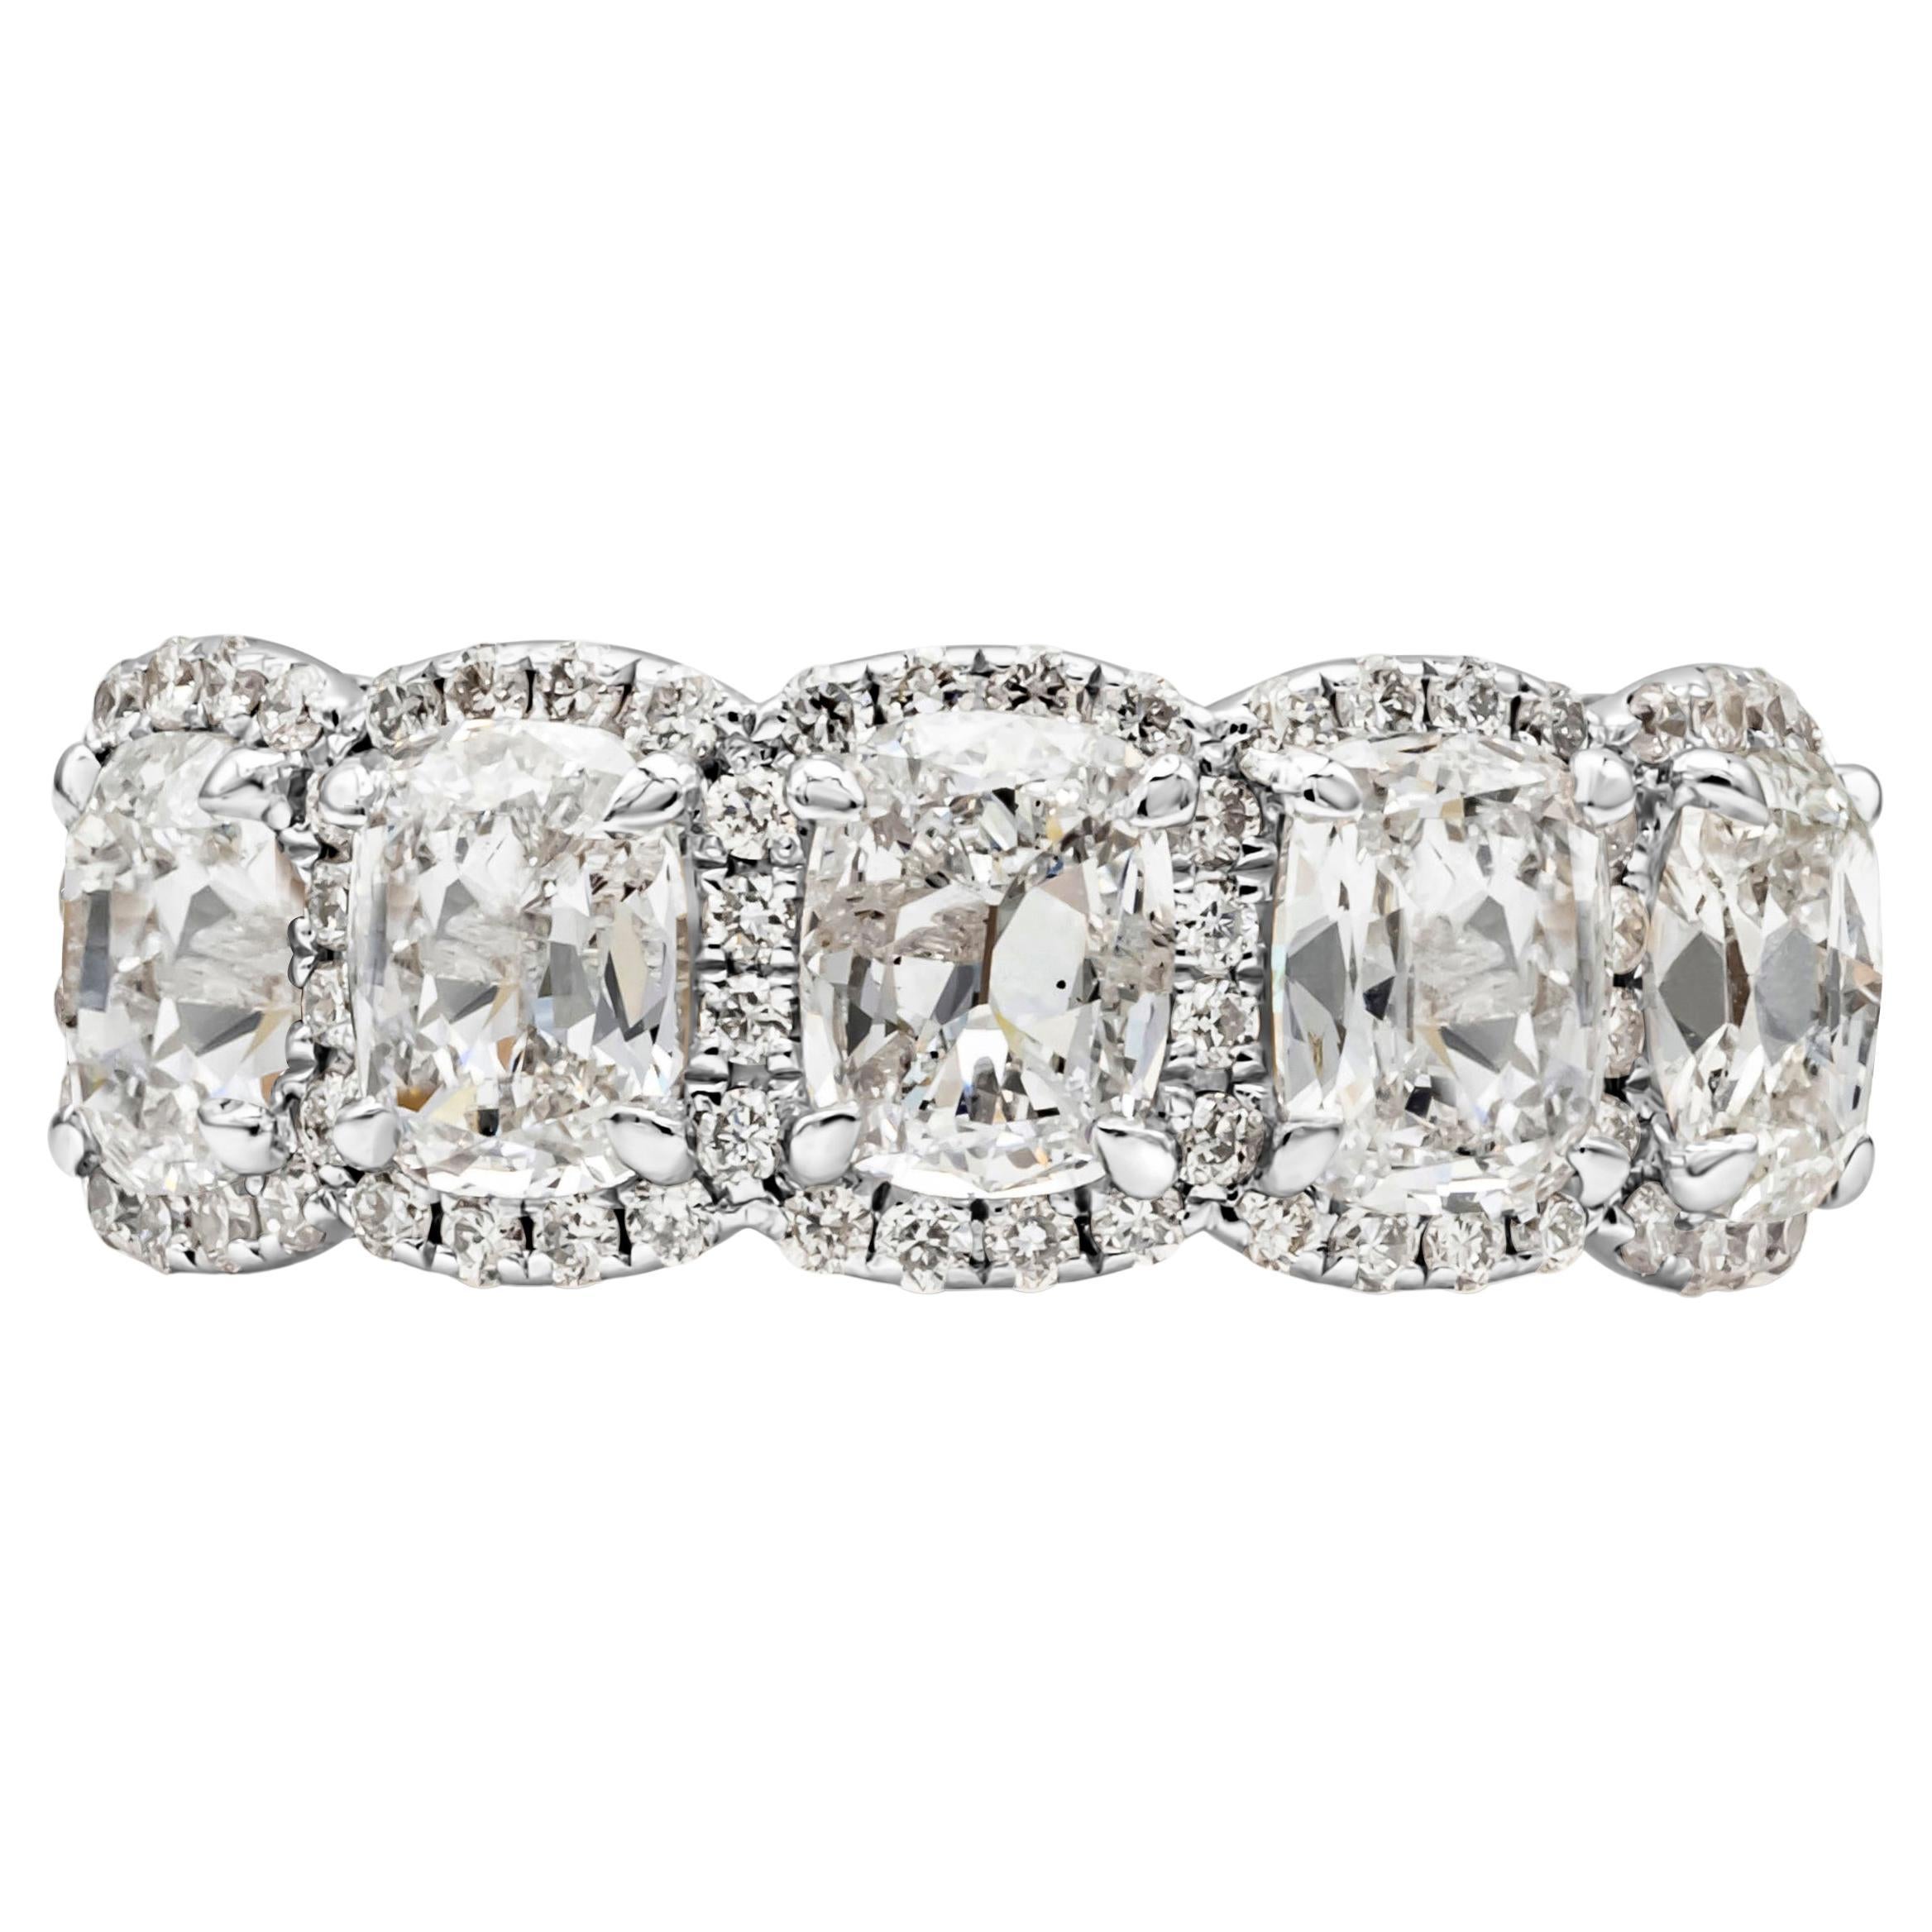 Ein eleganter und atemberaubender Ehering mit fünf Diamanten im Kissenschliff mit einem Gesamtgewicht von 2,31 Karat, Farbe E und Reinheit S12-I1, eingefasst in einen klassischen vierzackigen Ring aus 18 Karat Weißgold.  Korbeinstellung. Jeder von